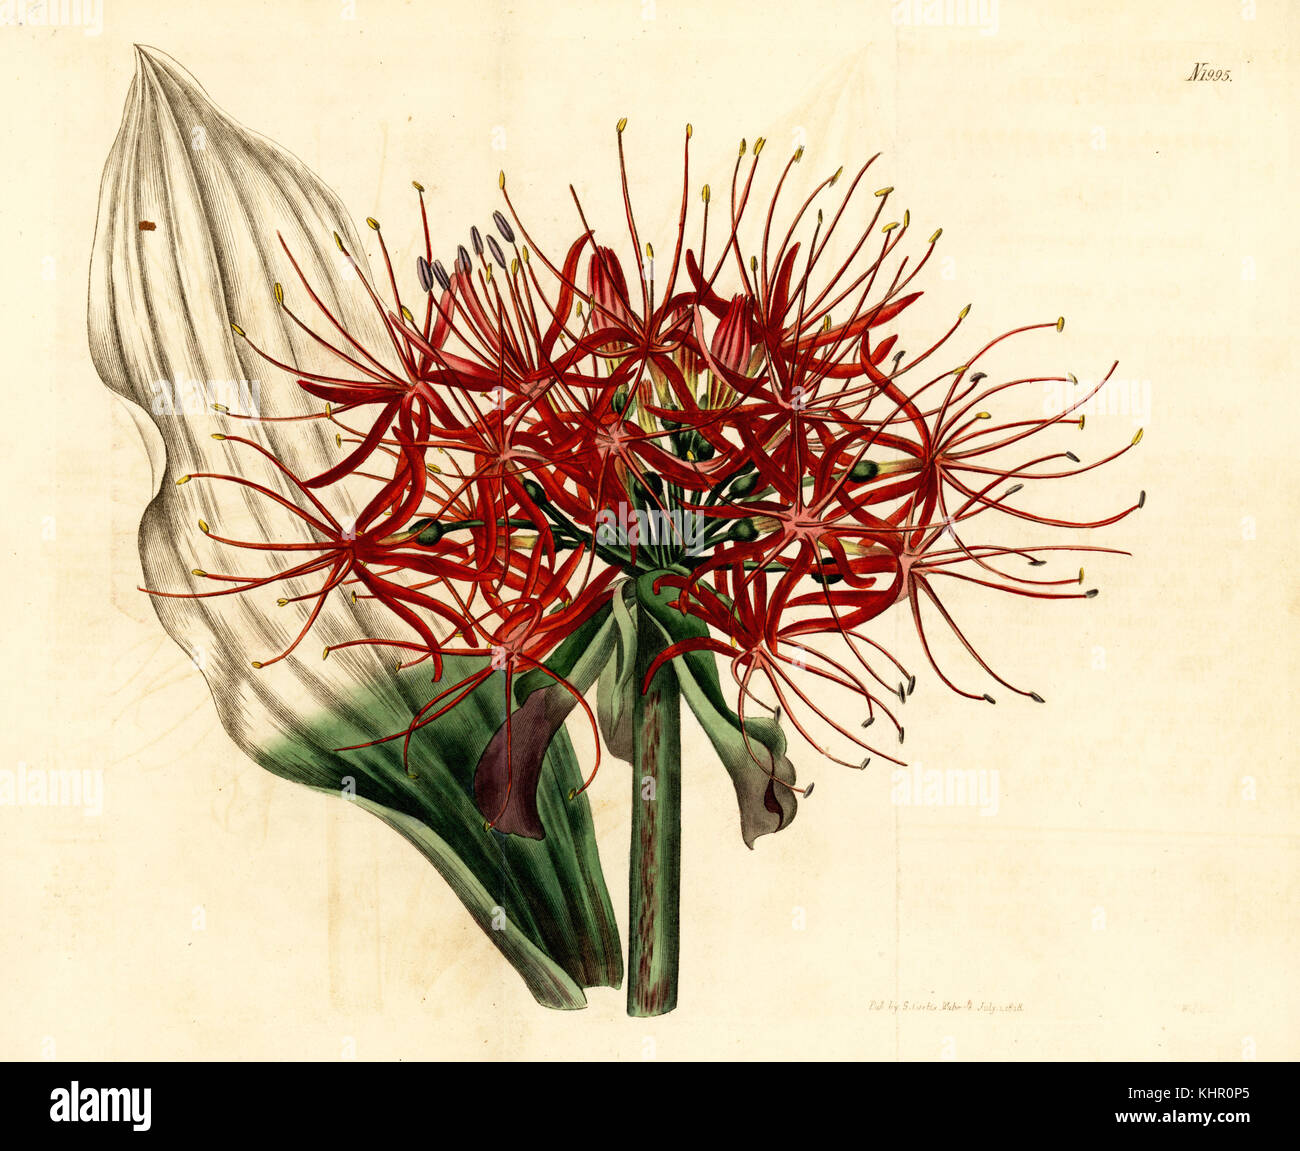 Blut Lily, Scadoxus oder Multiflorus (Haemanthus oder Multiflorus). Papierkörbe Kupferstich von weddell von Samuel Curtis Botanical Magazine, London, 1818. Stockfoto